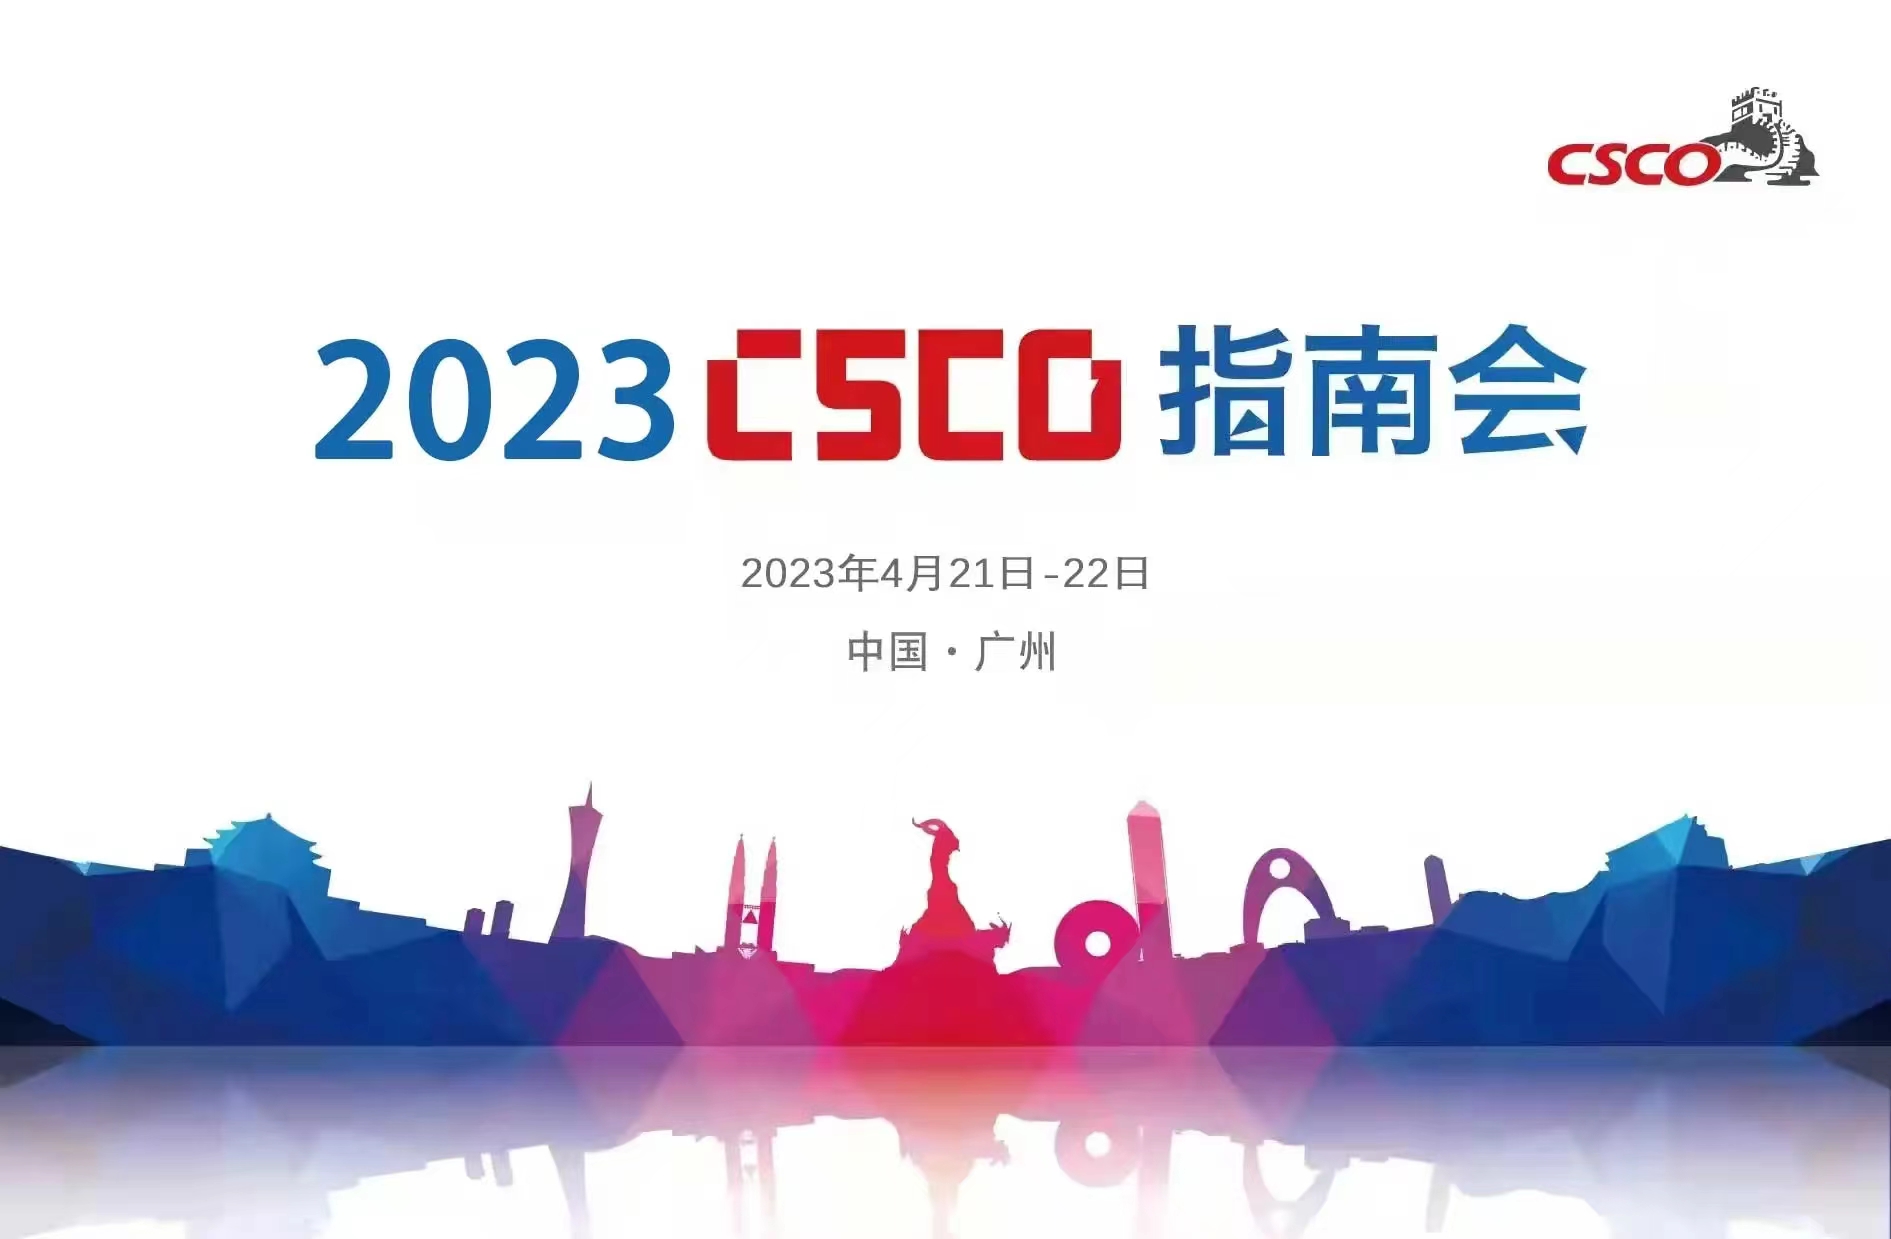 2023 CSCO指南會